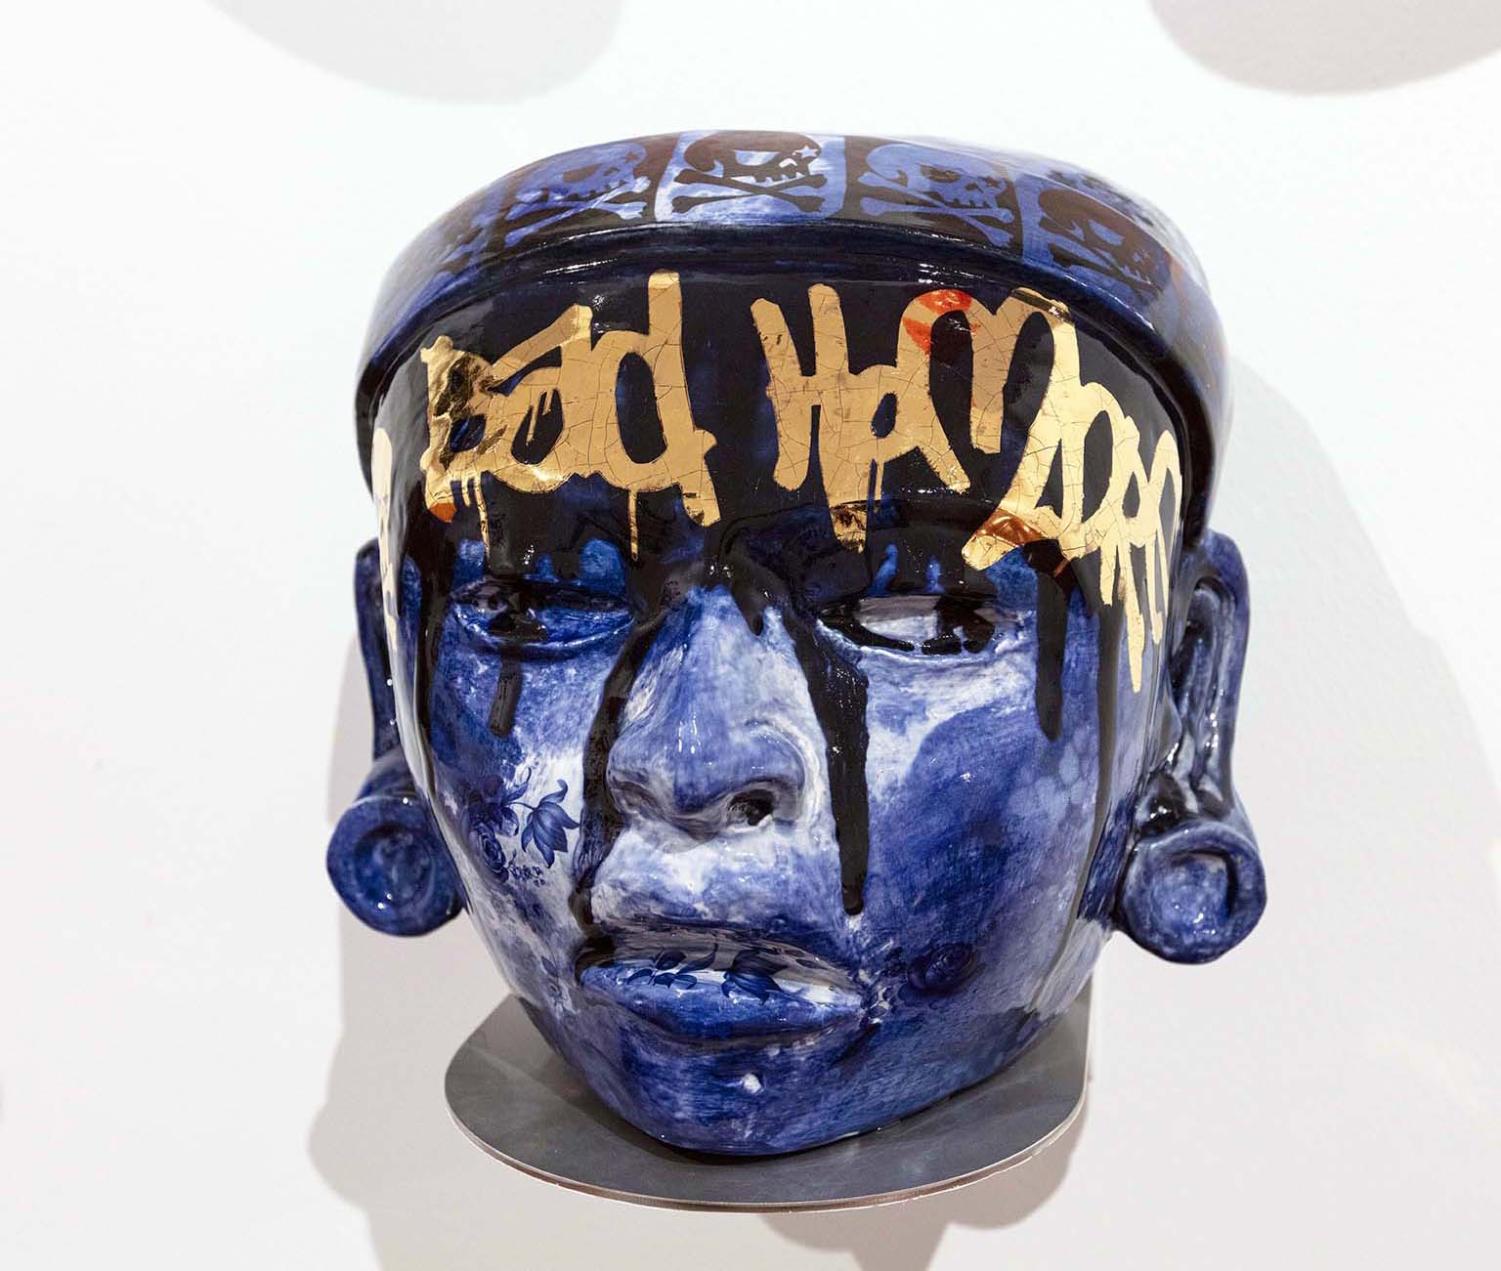 Horacio+Rodriguezs+Ceramic+Pieces+Spotlighted+at+The+Utah+Museum+of+Fine+Arts